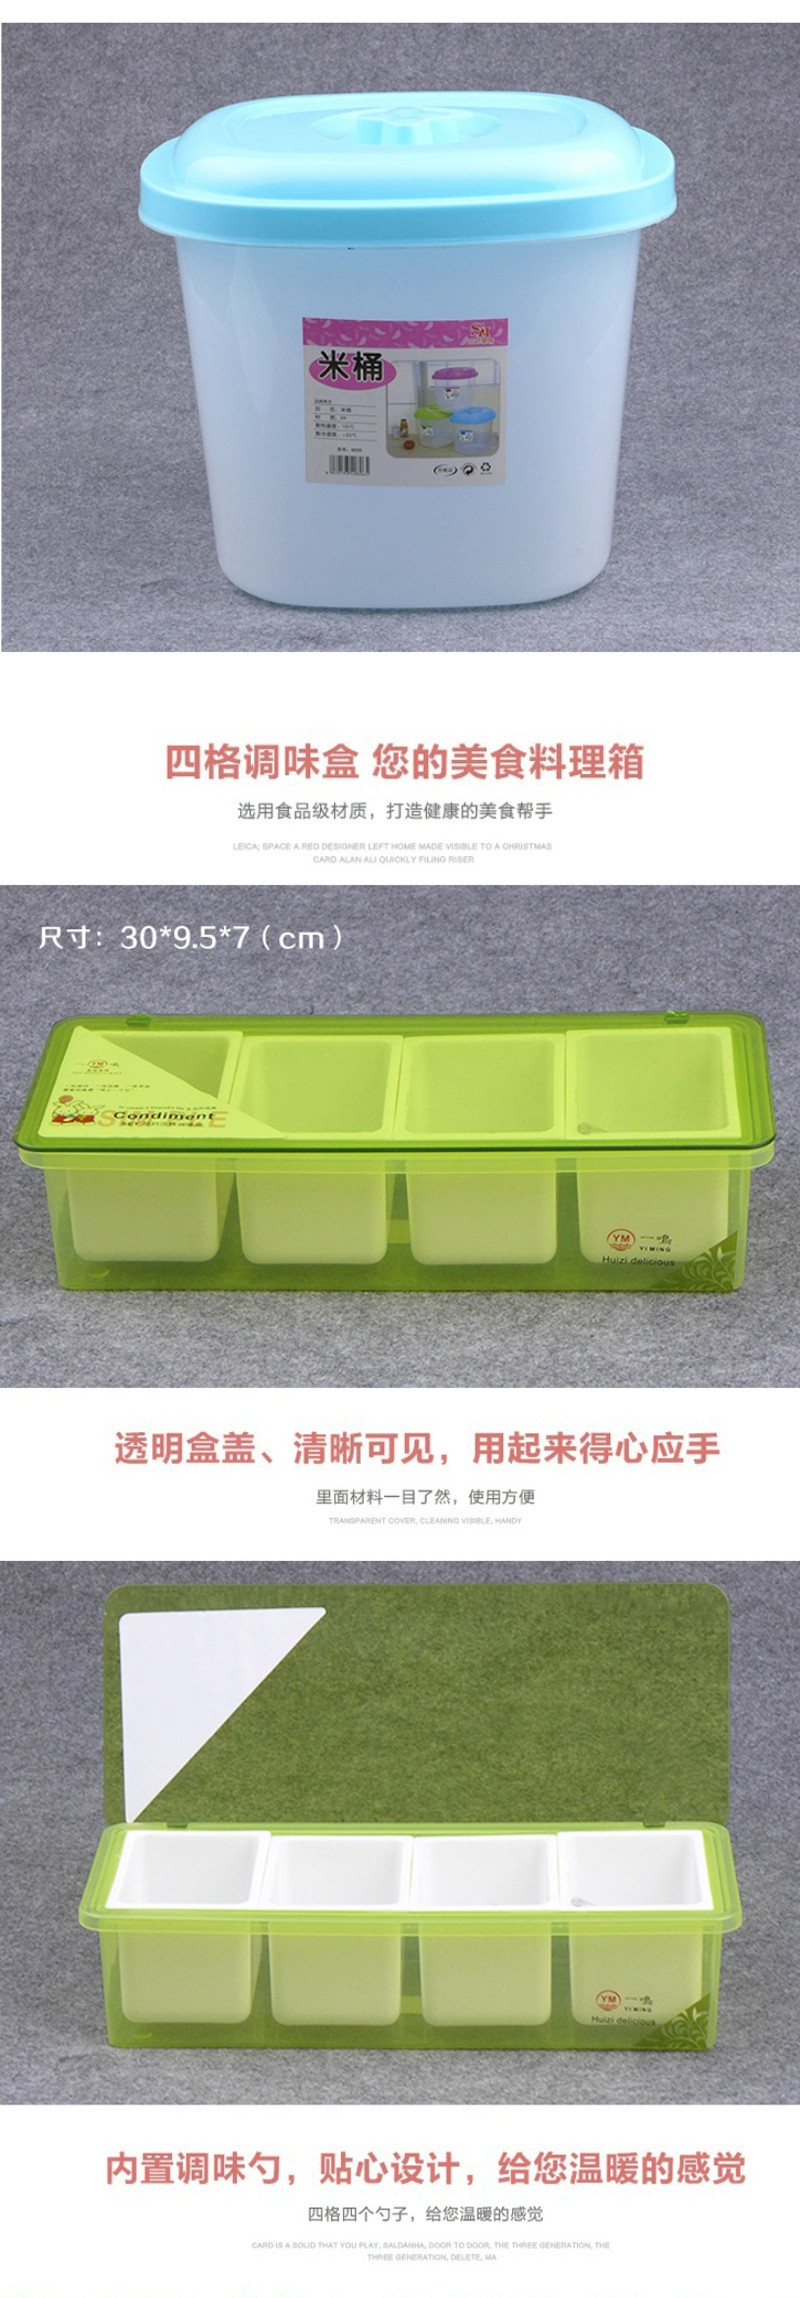 三环家居 家用无毒无味环保材质米桶 8007+一鸣 四格厨房用调味盒 YM-008